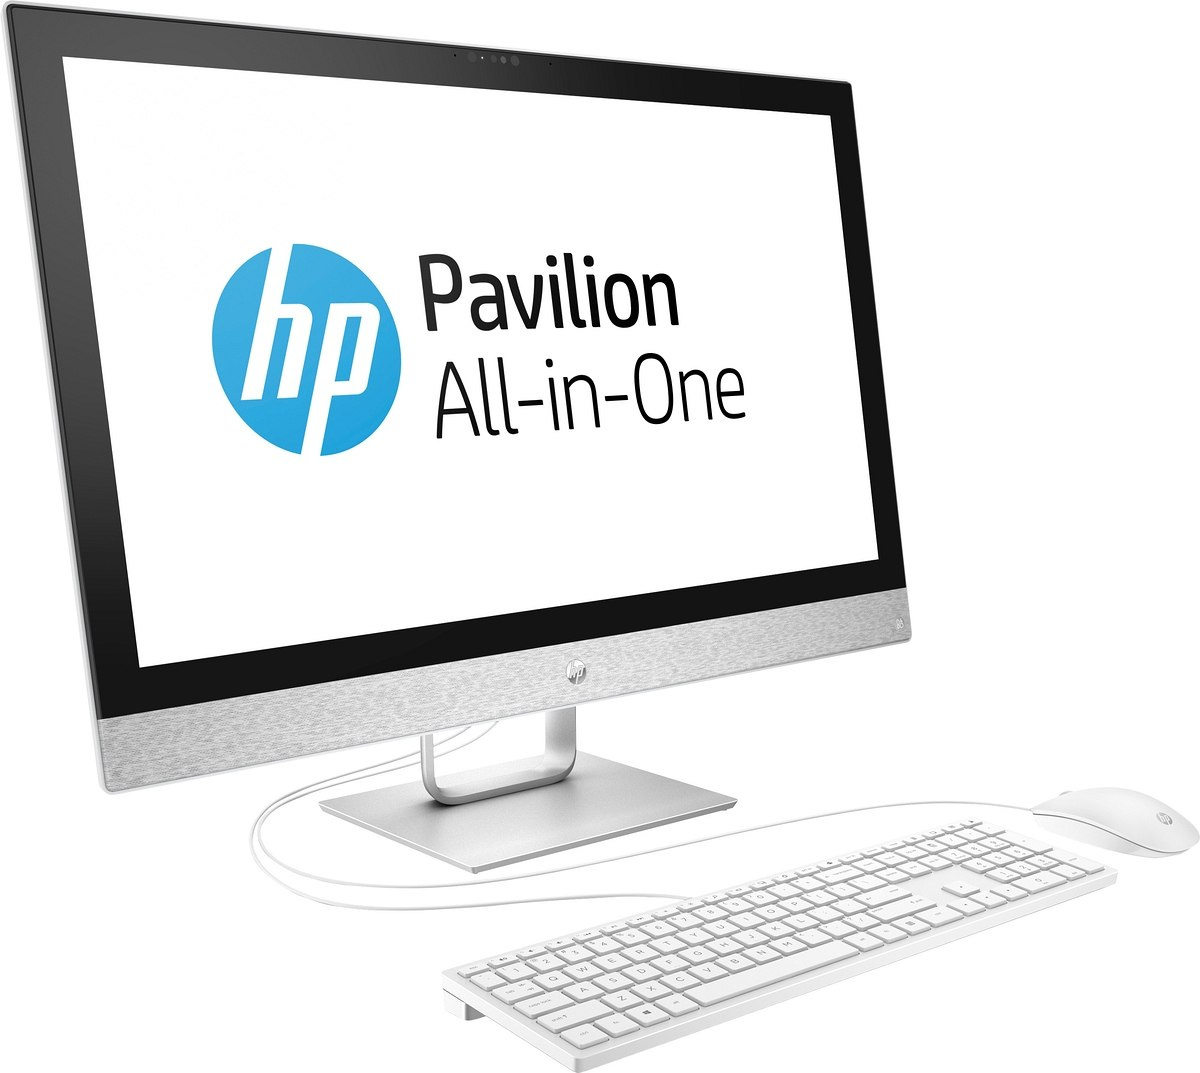 AiO HP Pavilion 27 FullHD IPS Intel Core i7-7700T 16GB DDR4 256GB SSD NVMe +2TB AMD Radeon 530 2GB Win10 +klawiatura i mysz